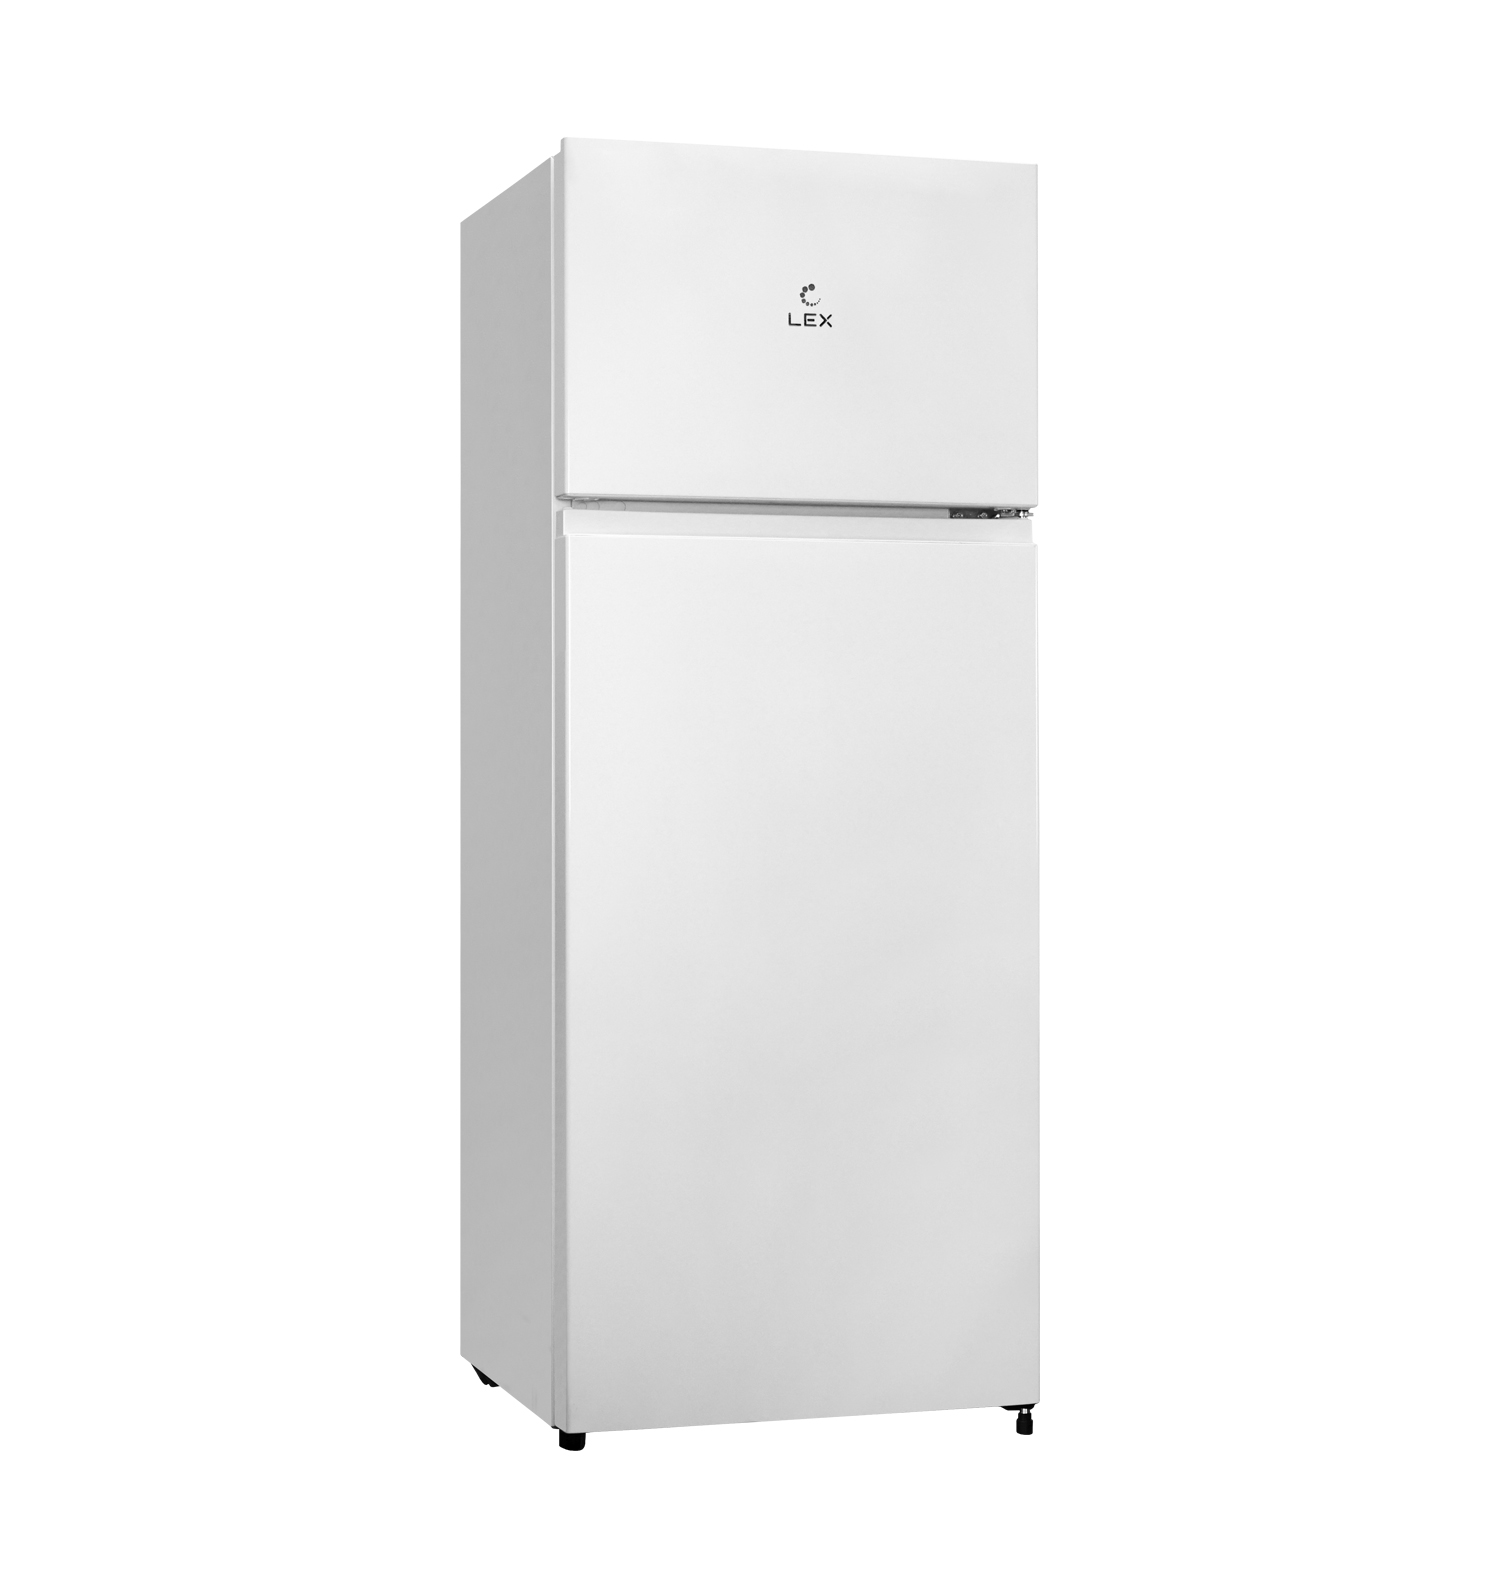 Холодильник LEX LEX RFS 201 DF белый бытовая техника холодильник магия микс